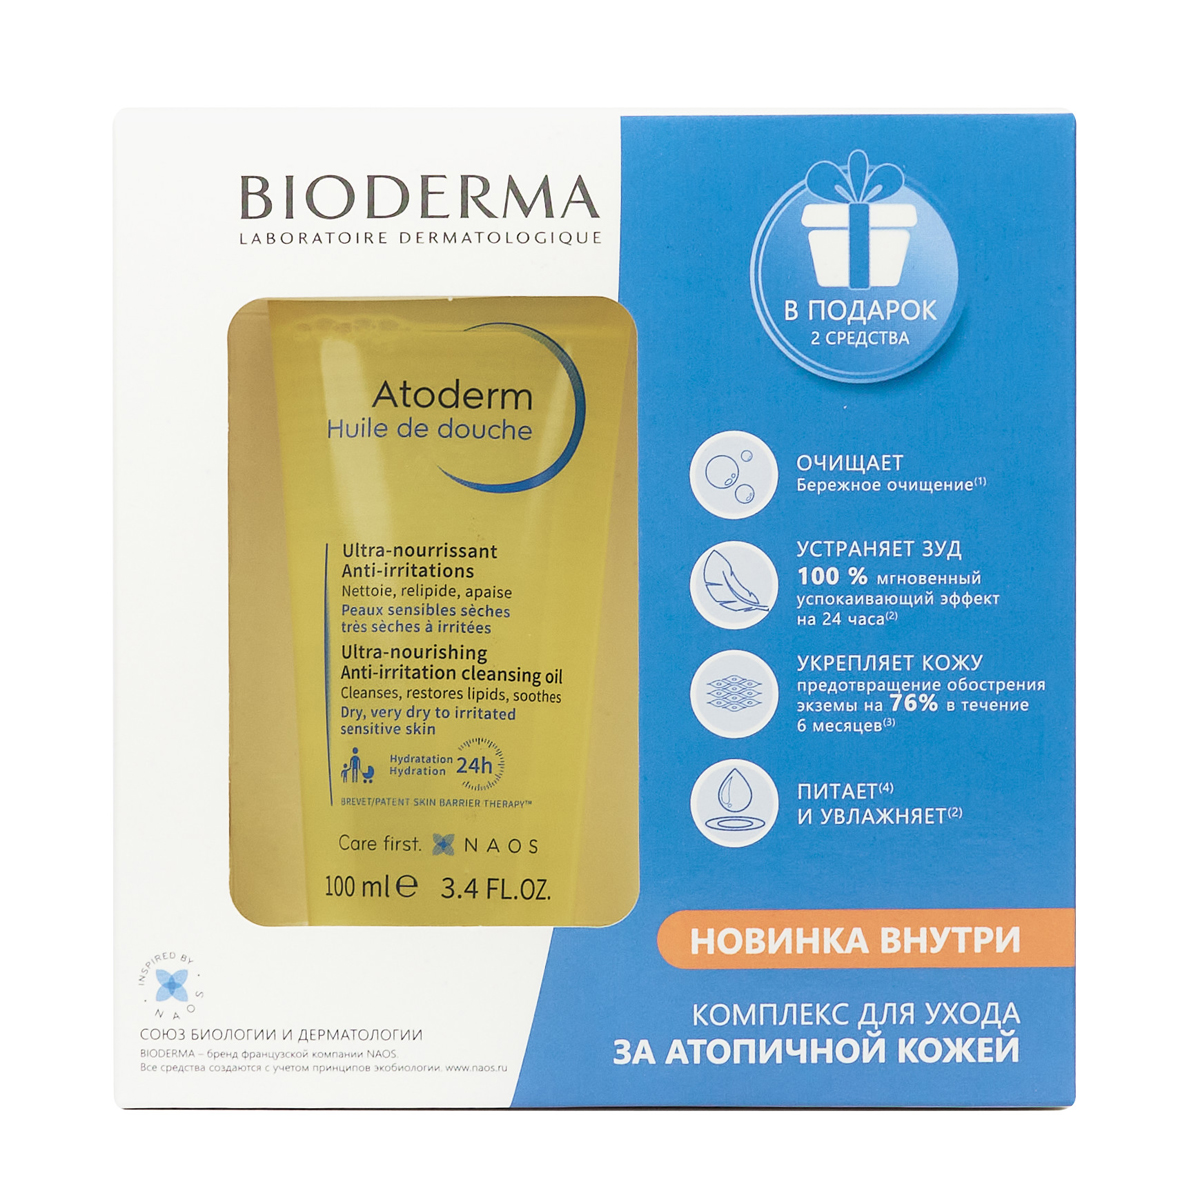 Bioderma Набор Комплекс для ухода за атопичной кожей (Biod